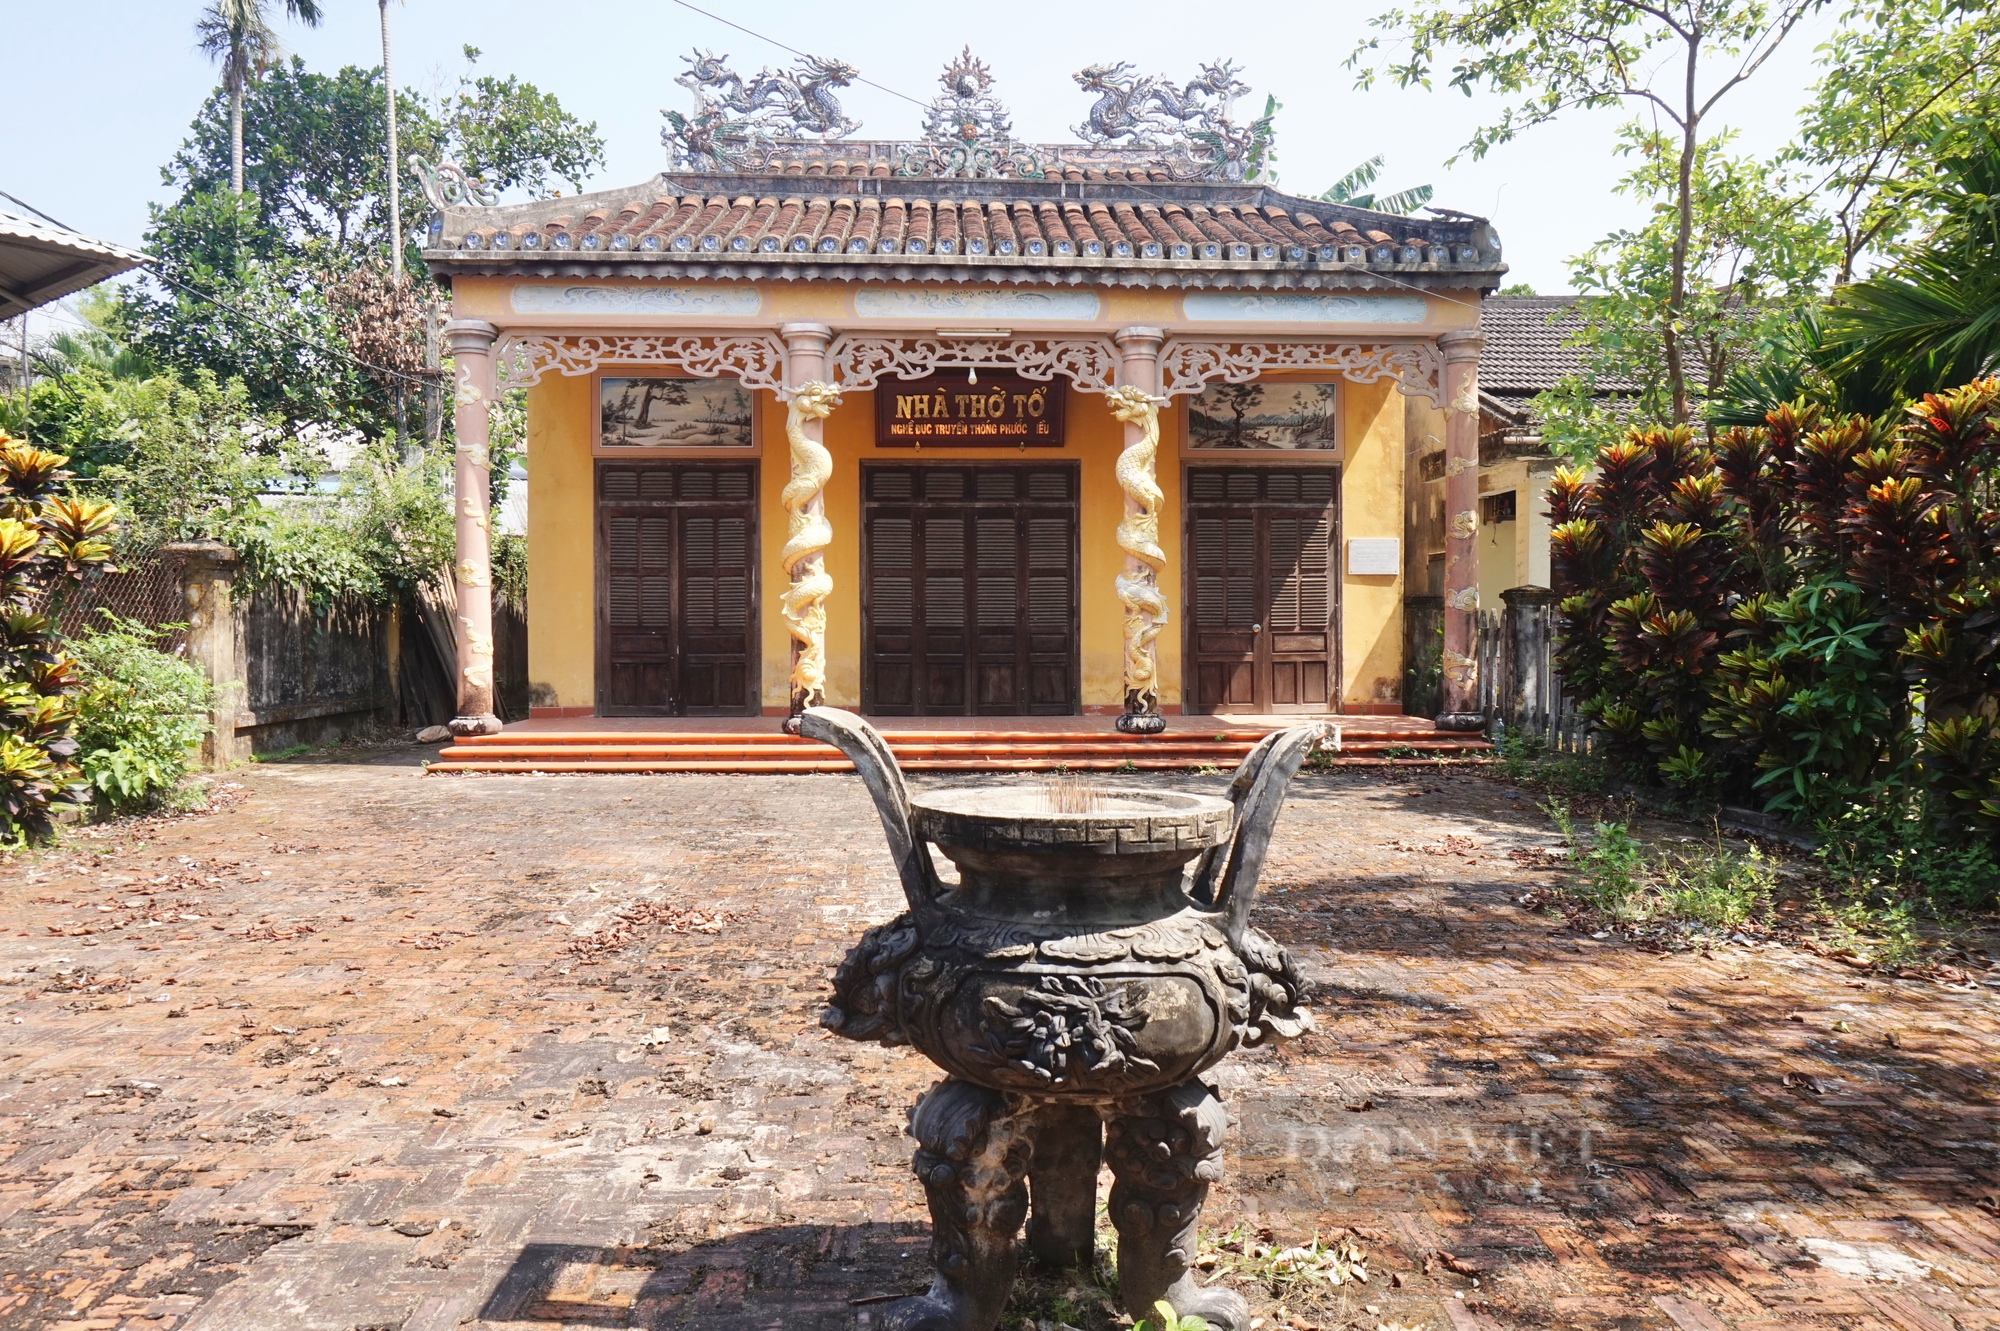 Đây là Dinh trấn Quảng Nam xưa, nổi tiếng với làng nghề truyền thống hơn 400 năm  - Ảnh 8.